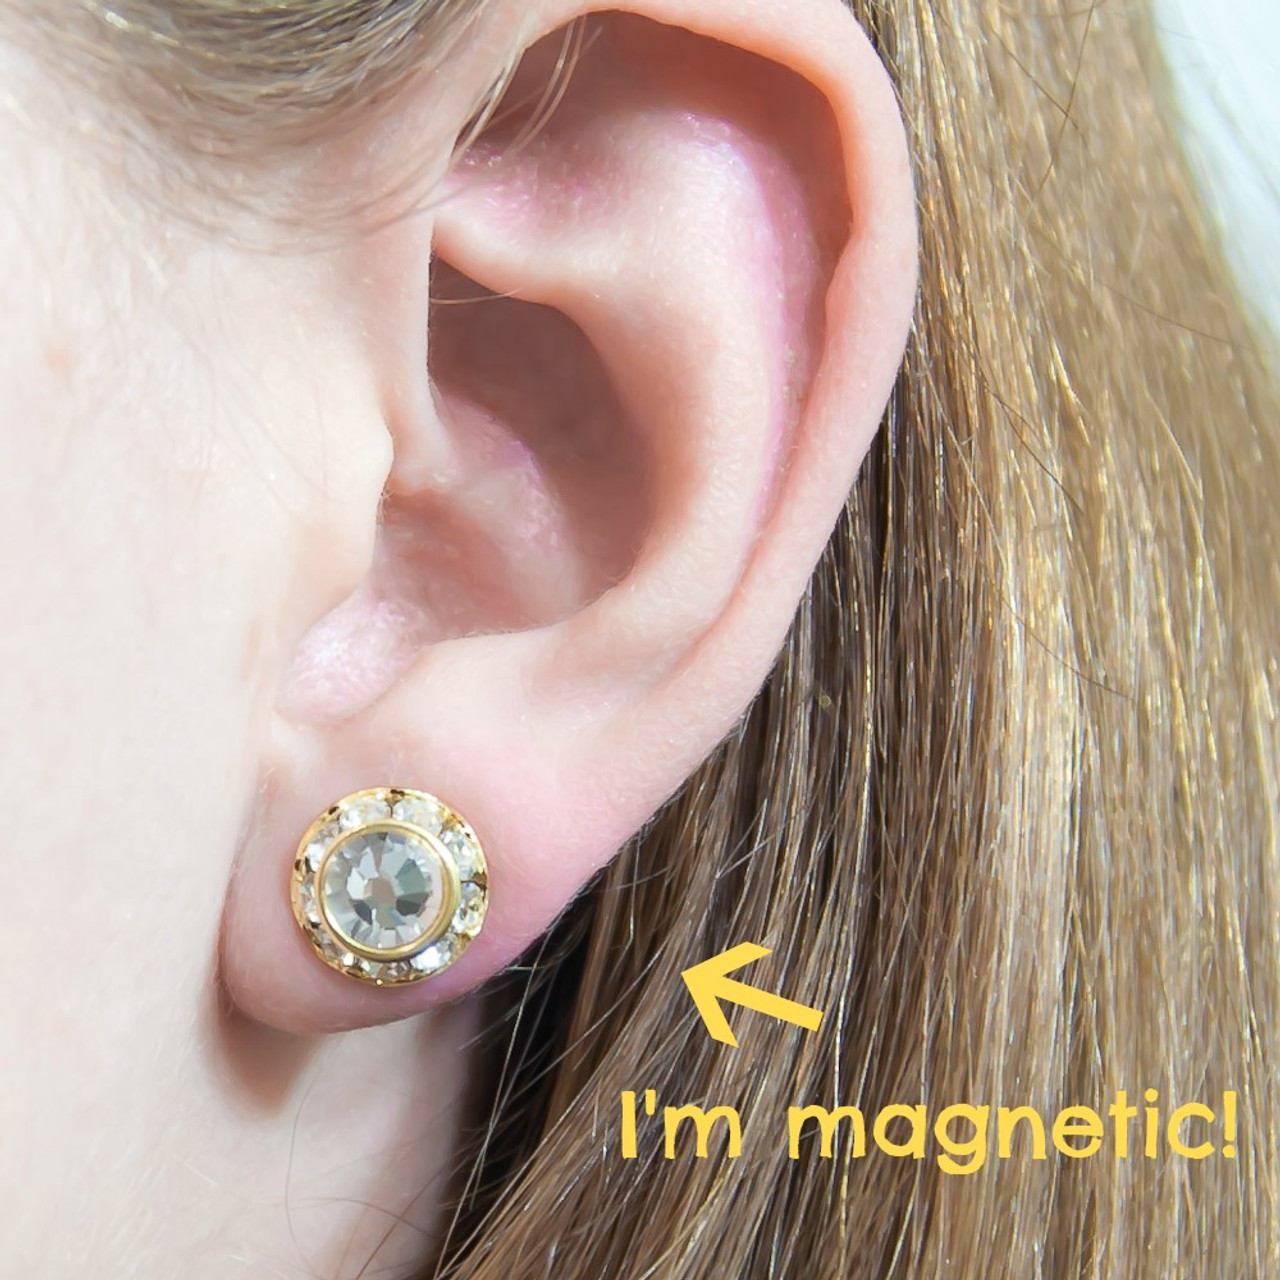 Earlobe Ear Cuff Clip On Earrings Without Piercing For Women | Ear cuff,  Clip on earrings, Fashion earrings